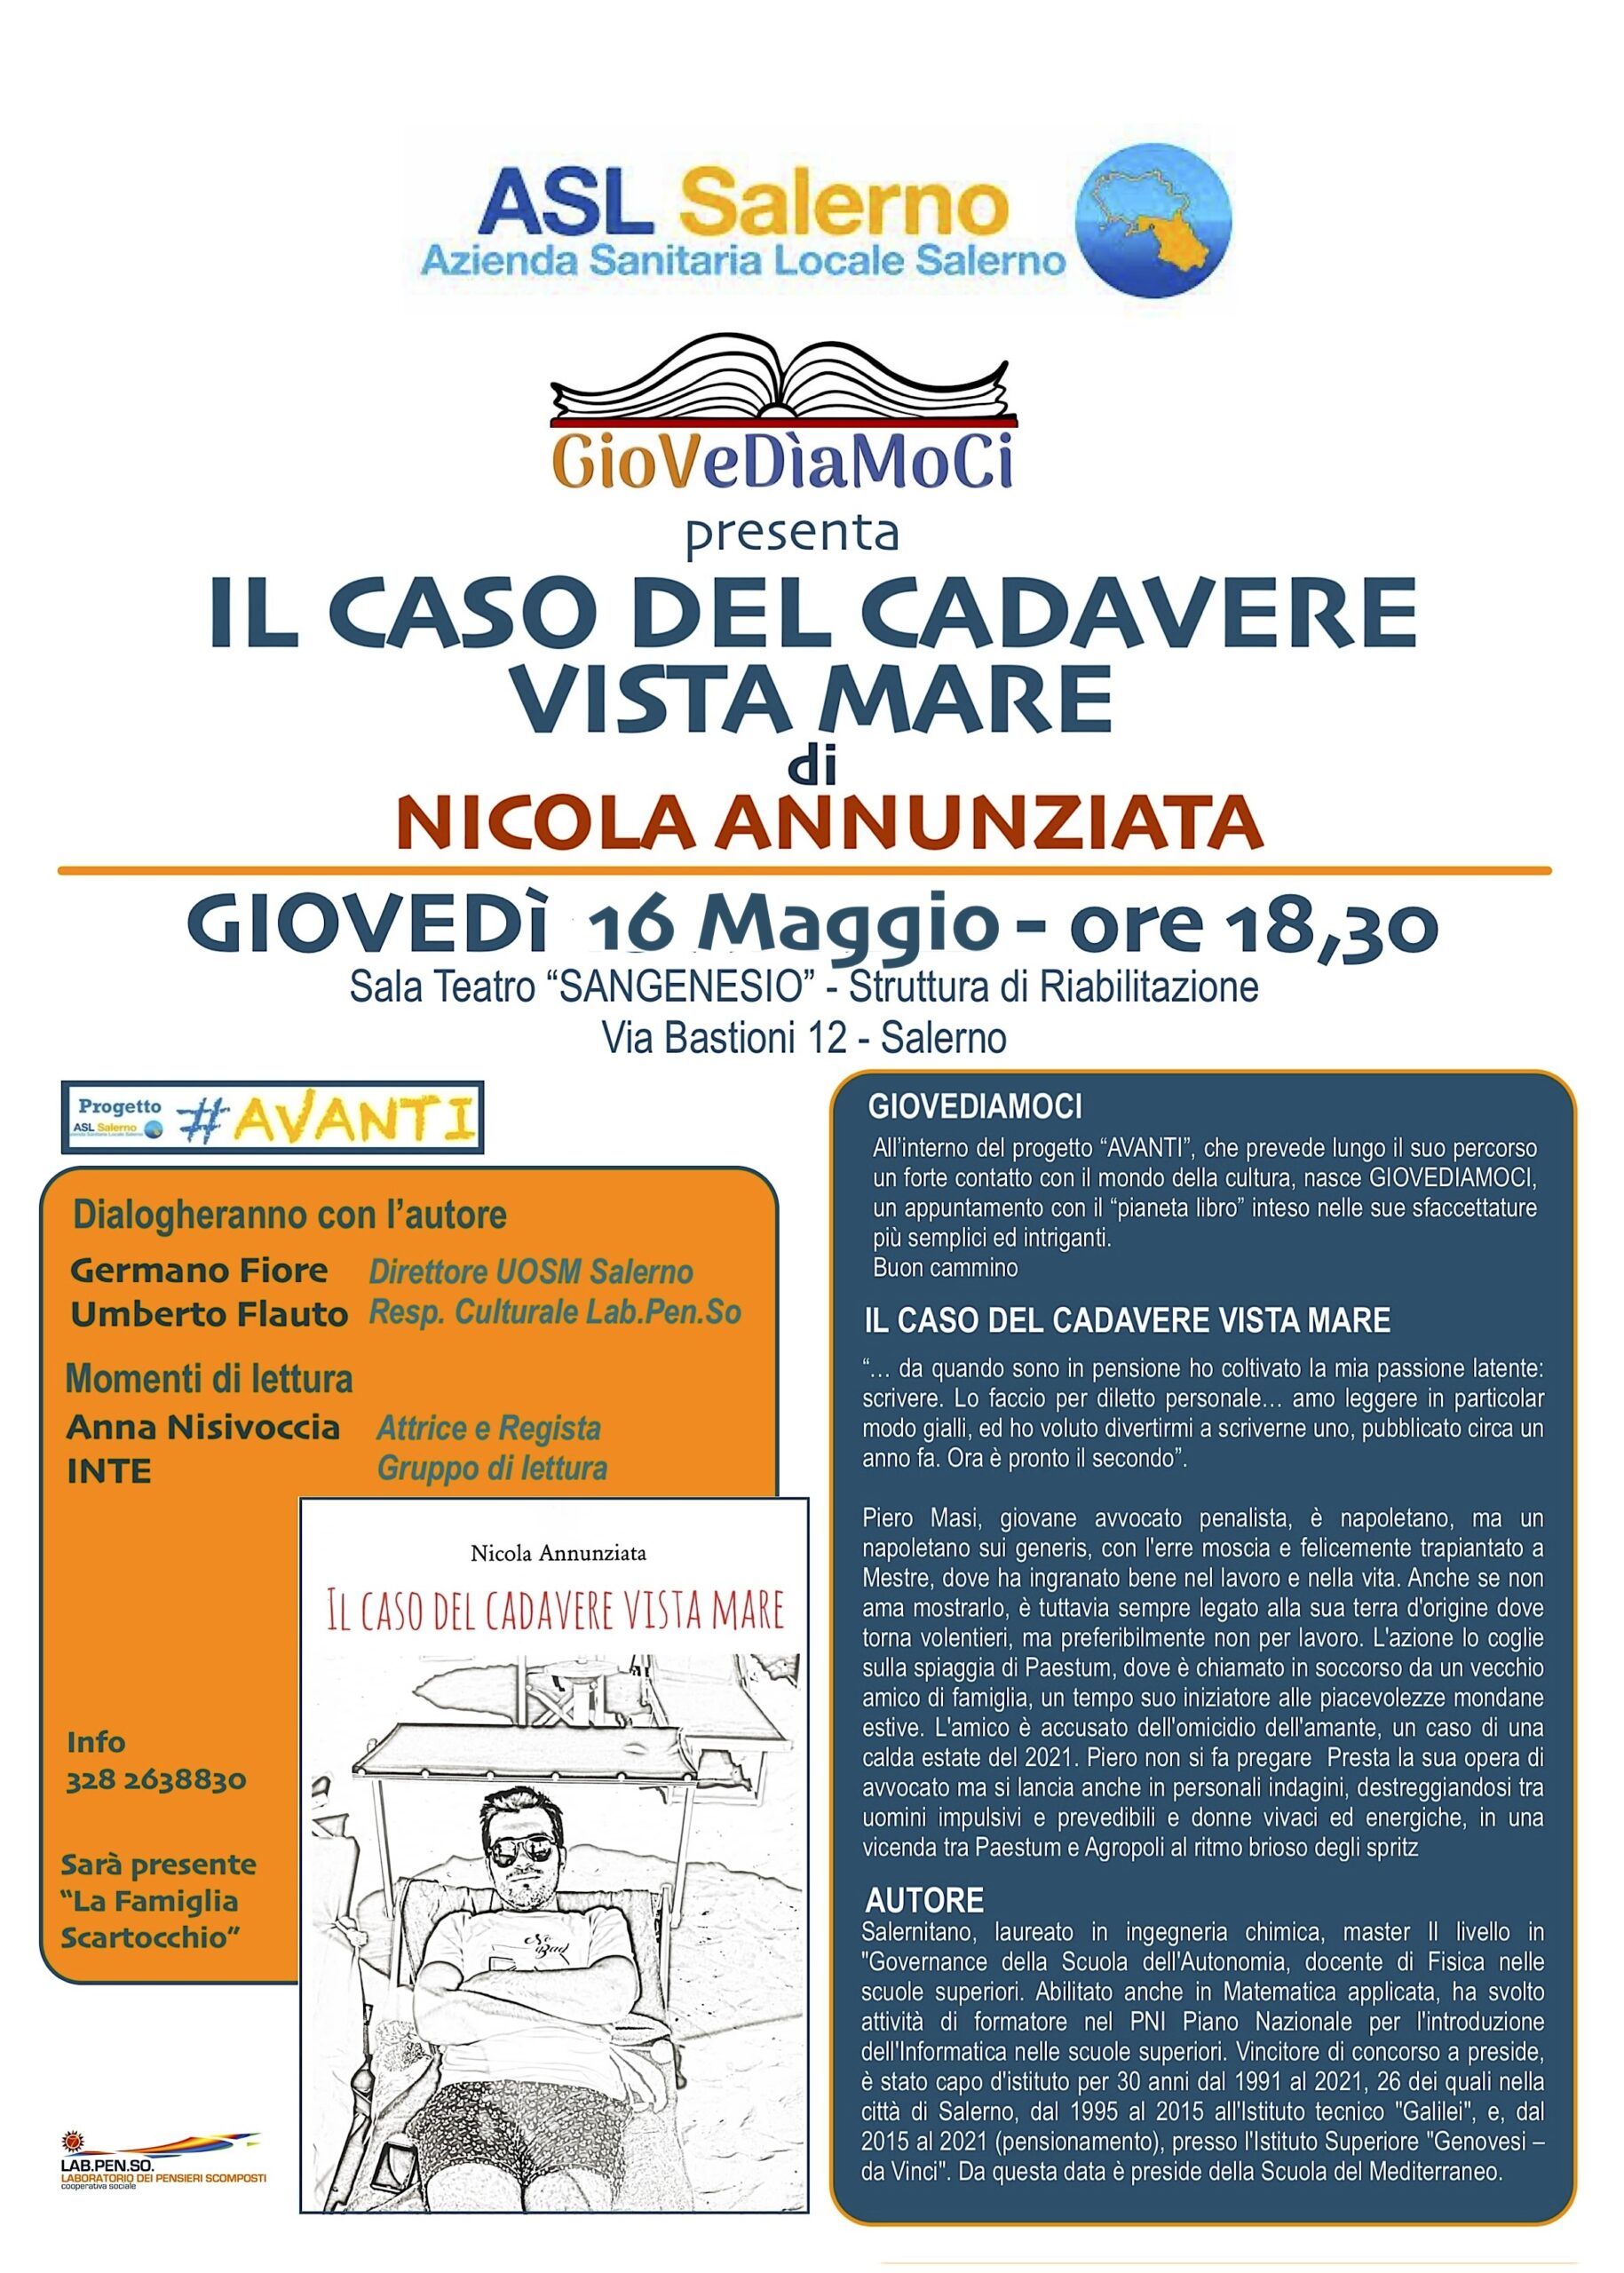 Salerno: Giovediamoci, presentazione libro di Nicola Annunziata “Il caso del  cadavere vista mare” – Dentro Salerno